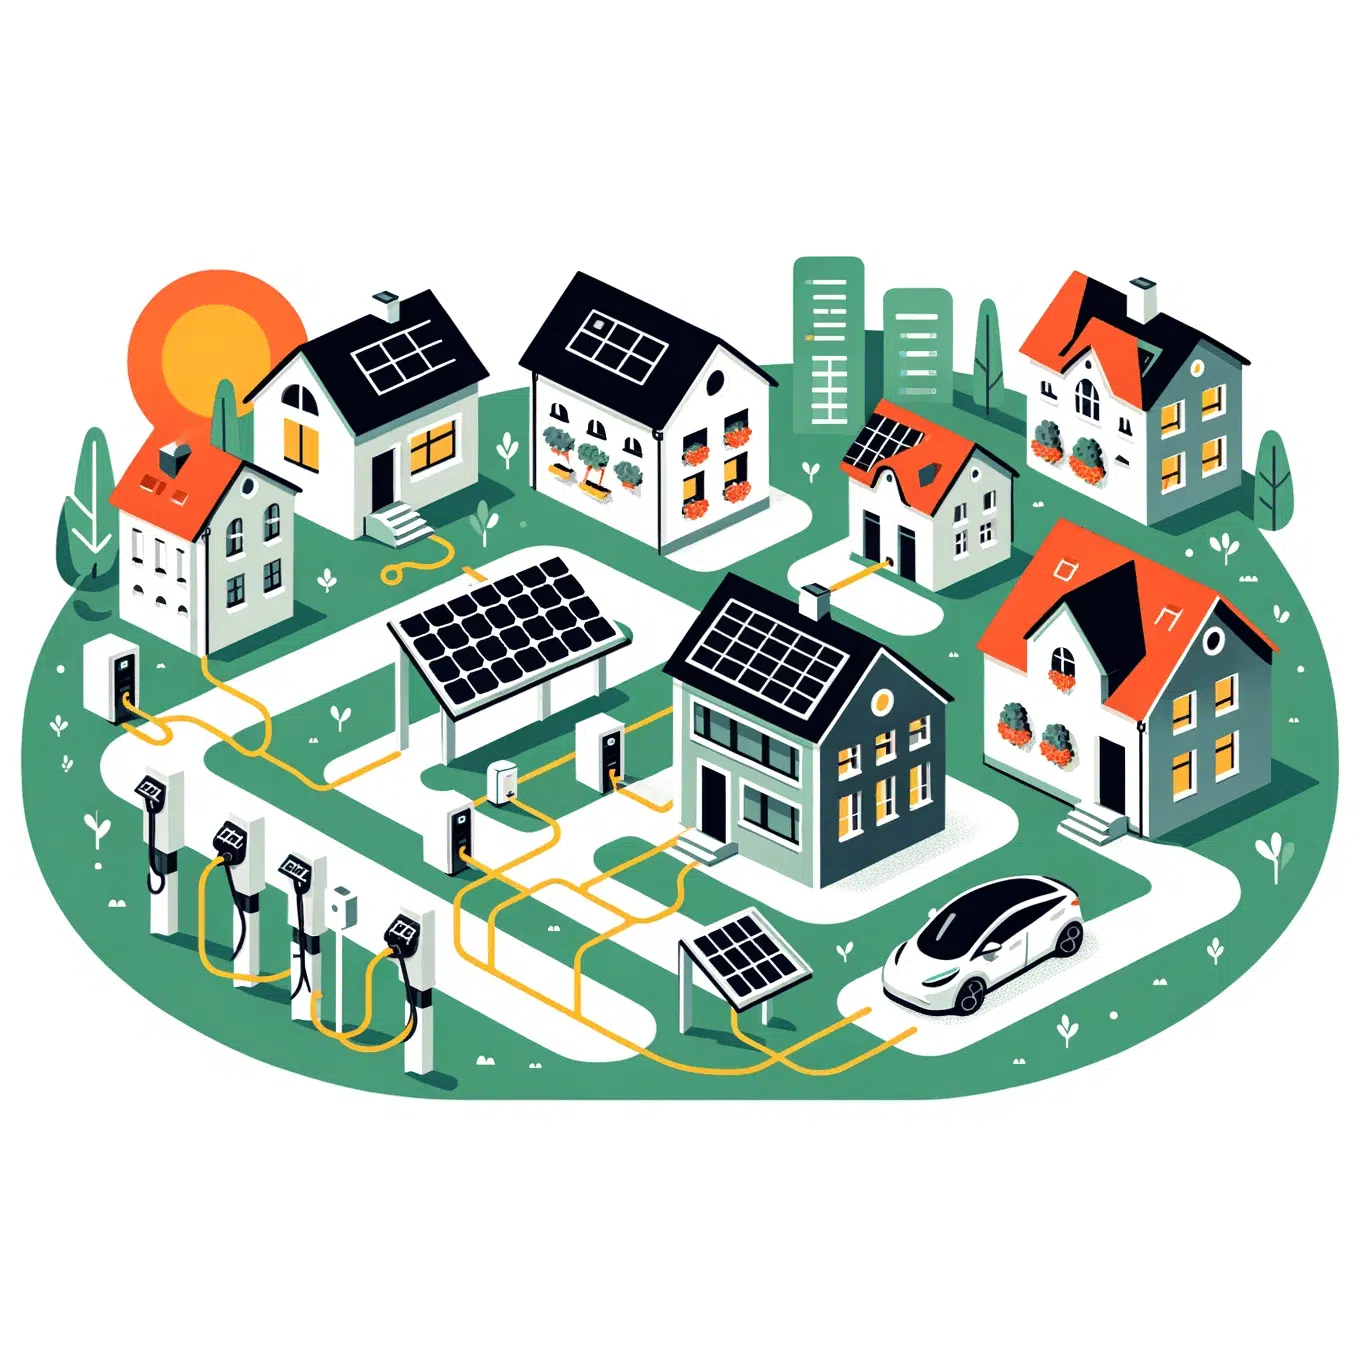 Illustration einer Energiegemeinschaft mit Häusern mit Photovoltaik-Paneelen und Elektroautos die an Ladestationen angeschlossen sind. Es wird ein intelligentes Energienetzwerk dargestellt.